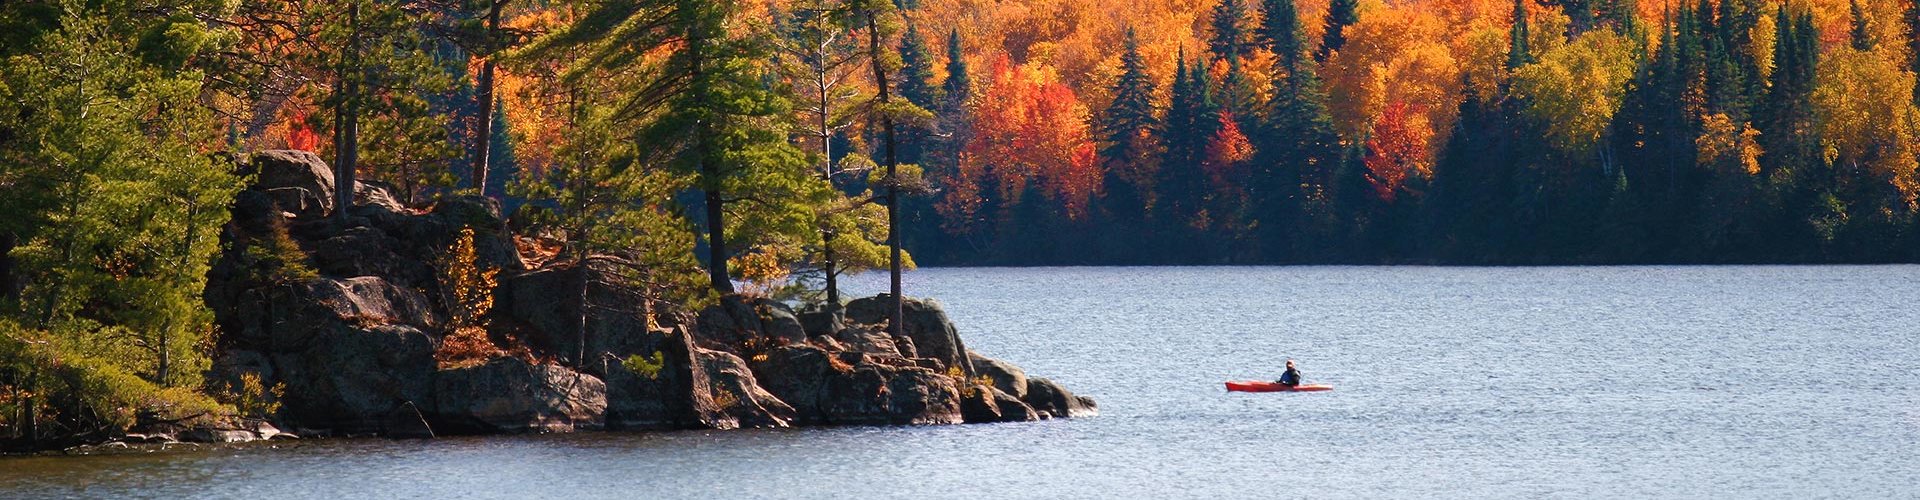 Herbst in Kanada - bunte Blätter